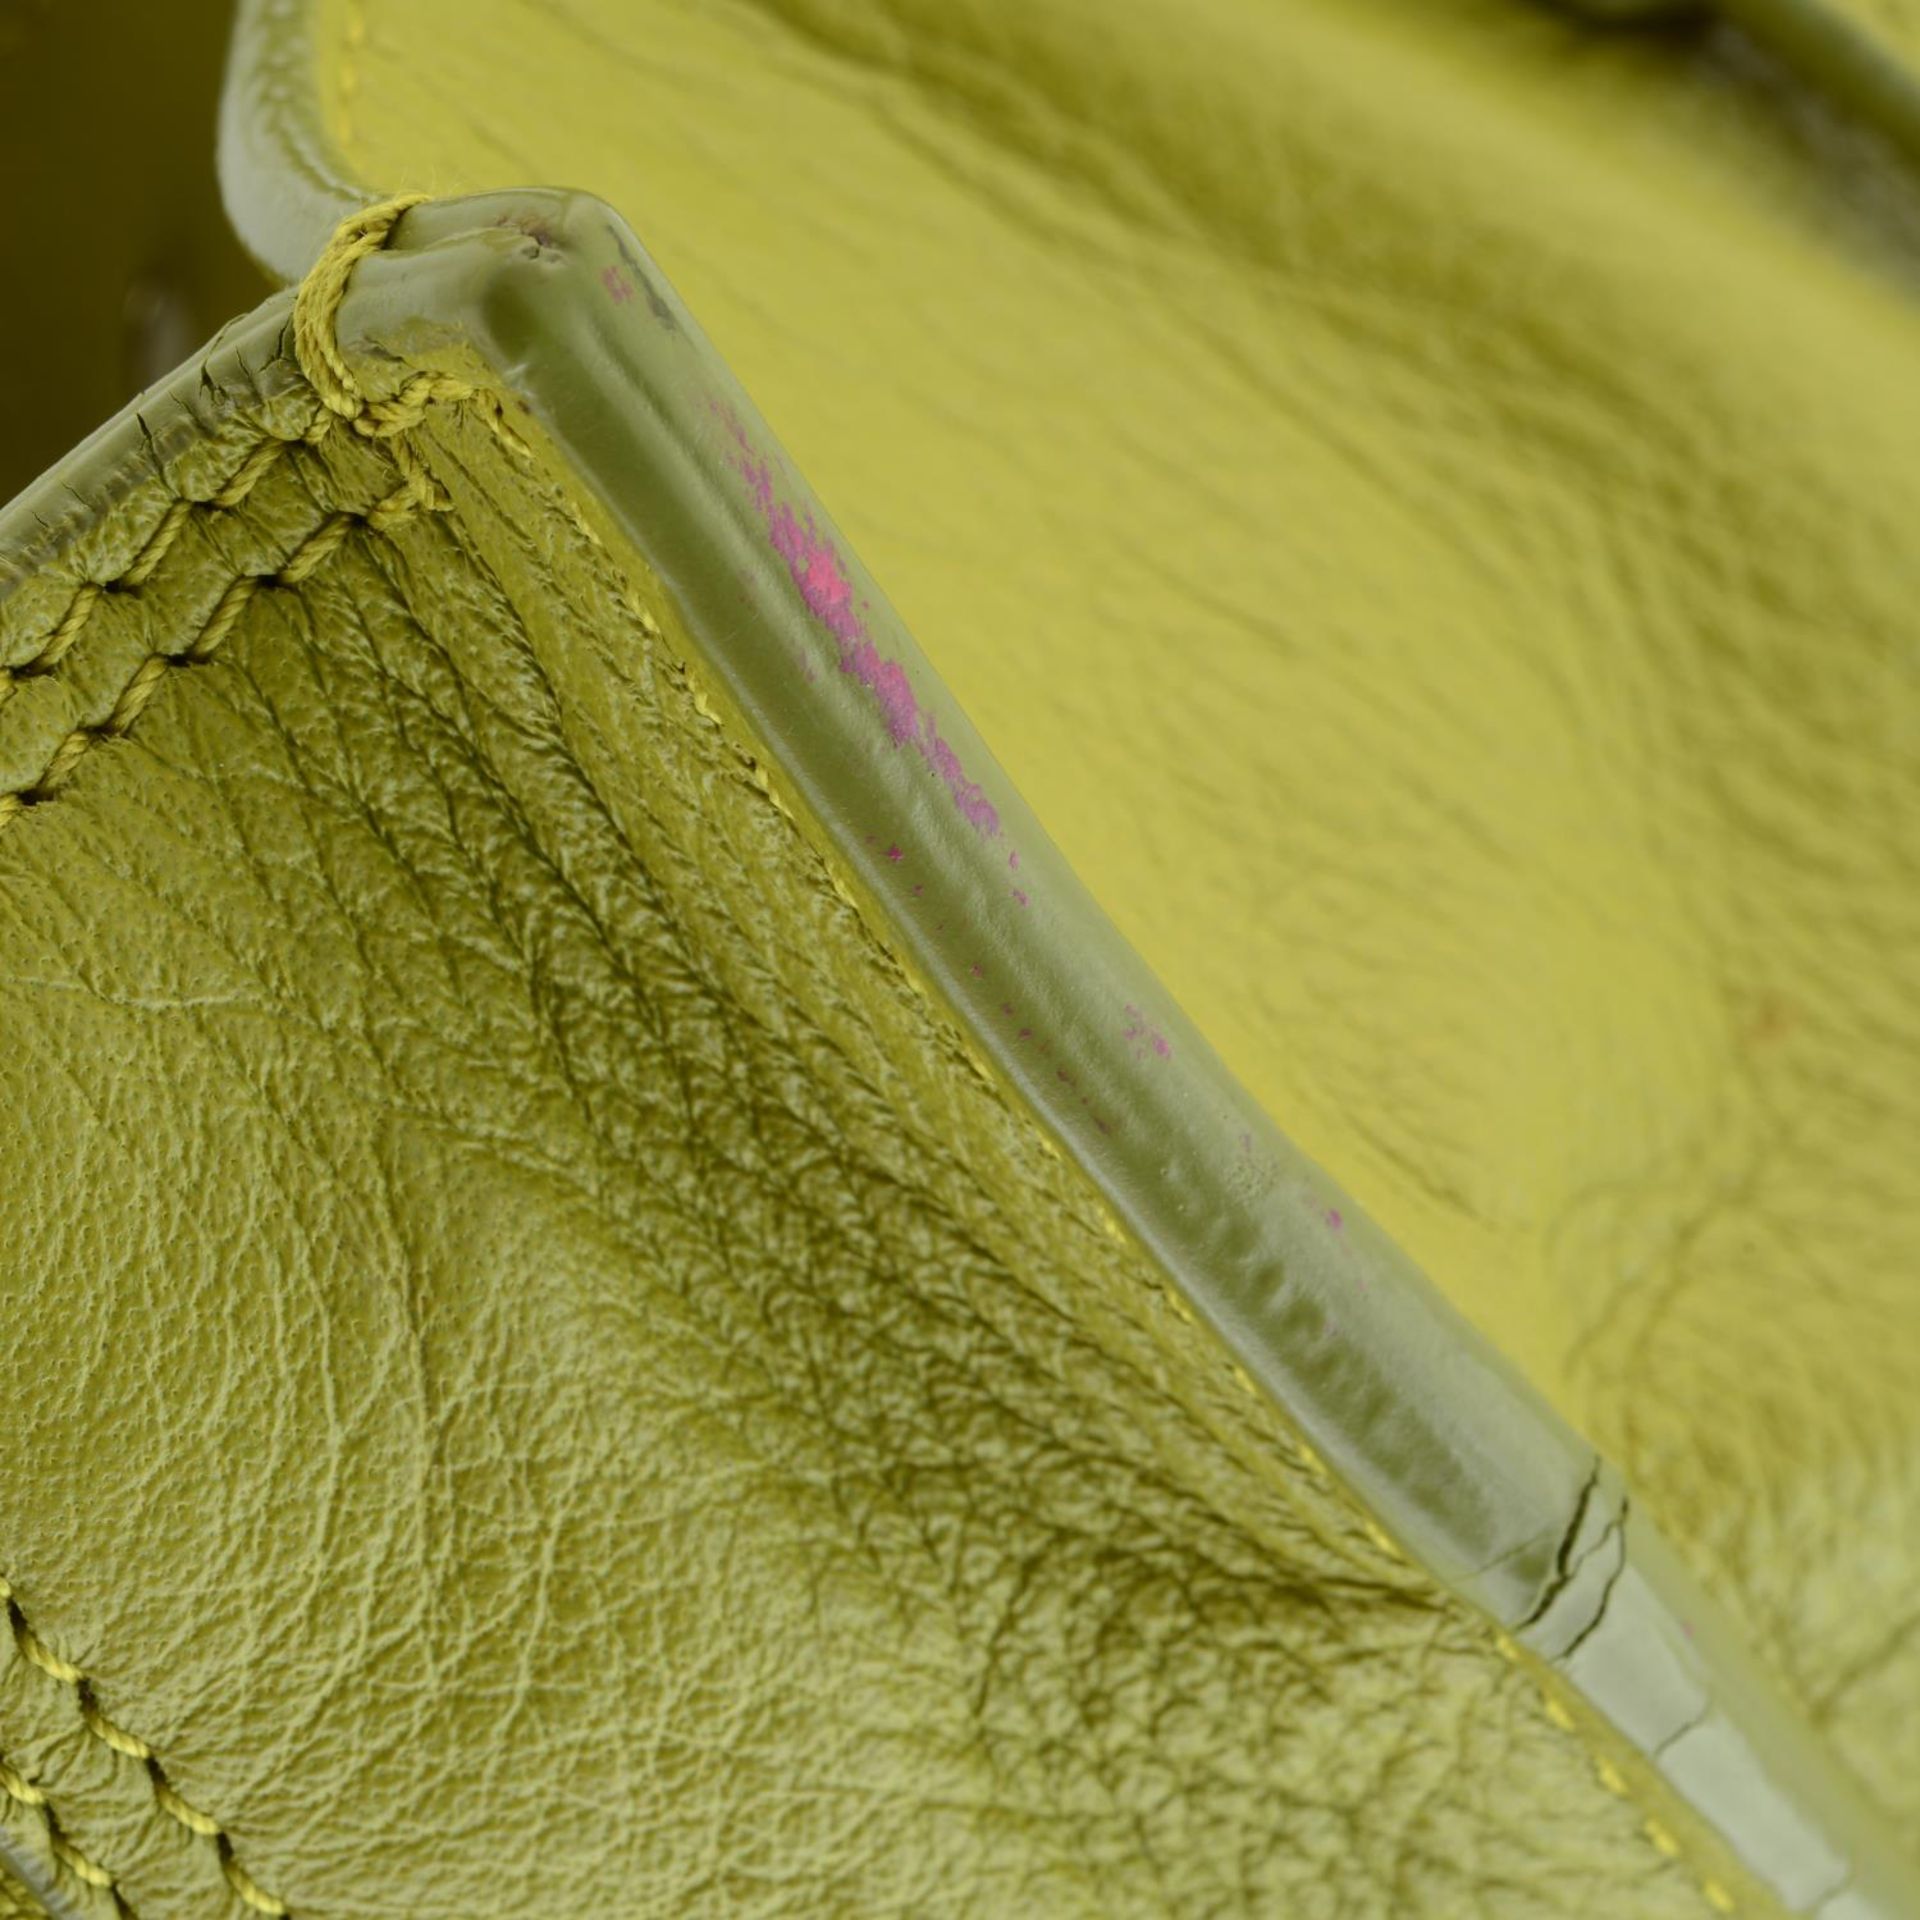 BALENCIAGA - a chartreuse leather Papier A6 handbag. - Image 6 of 7